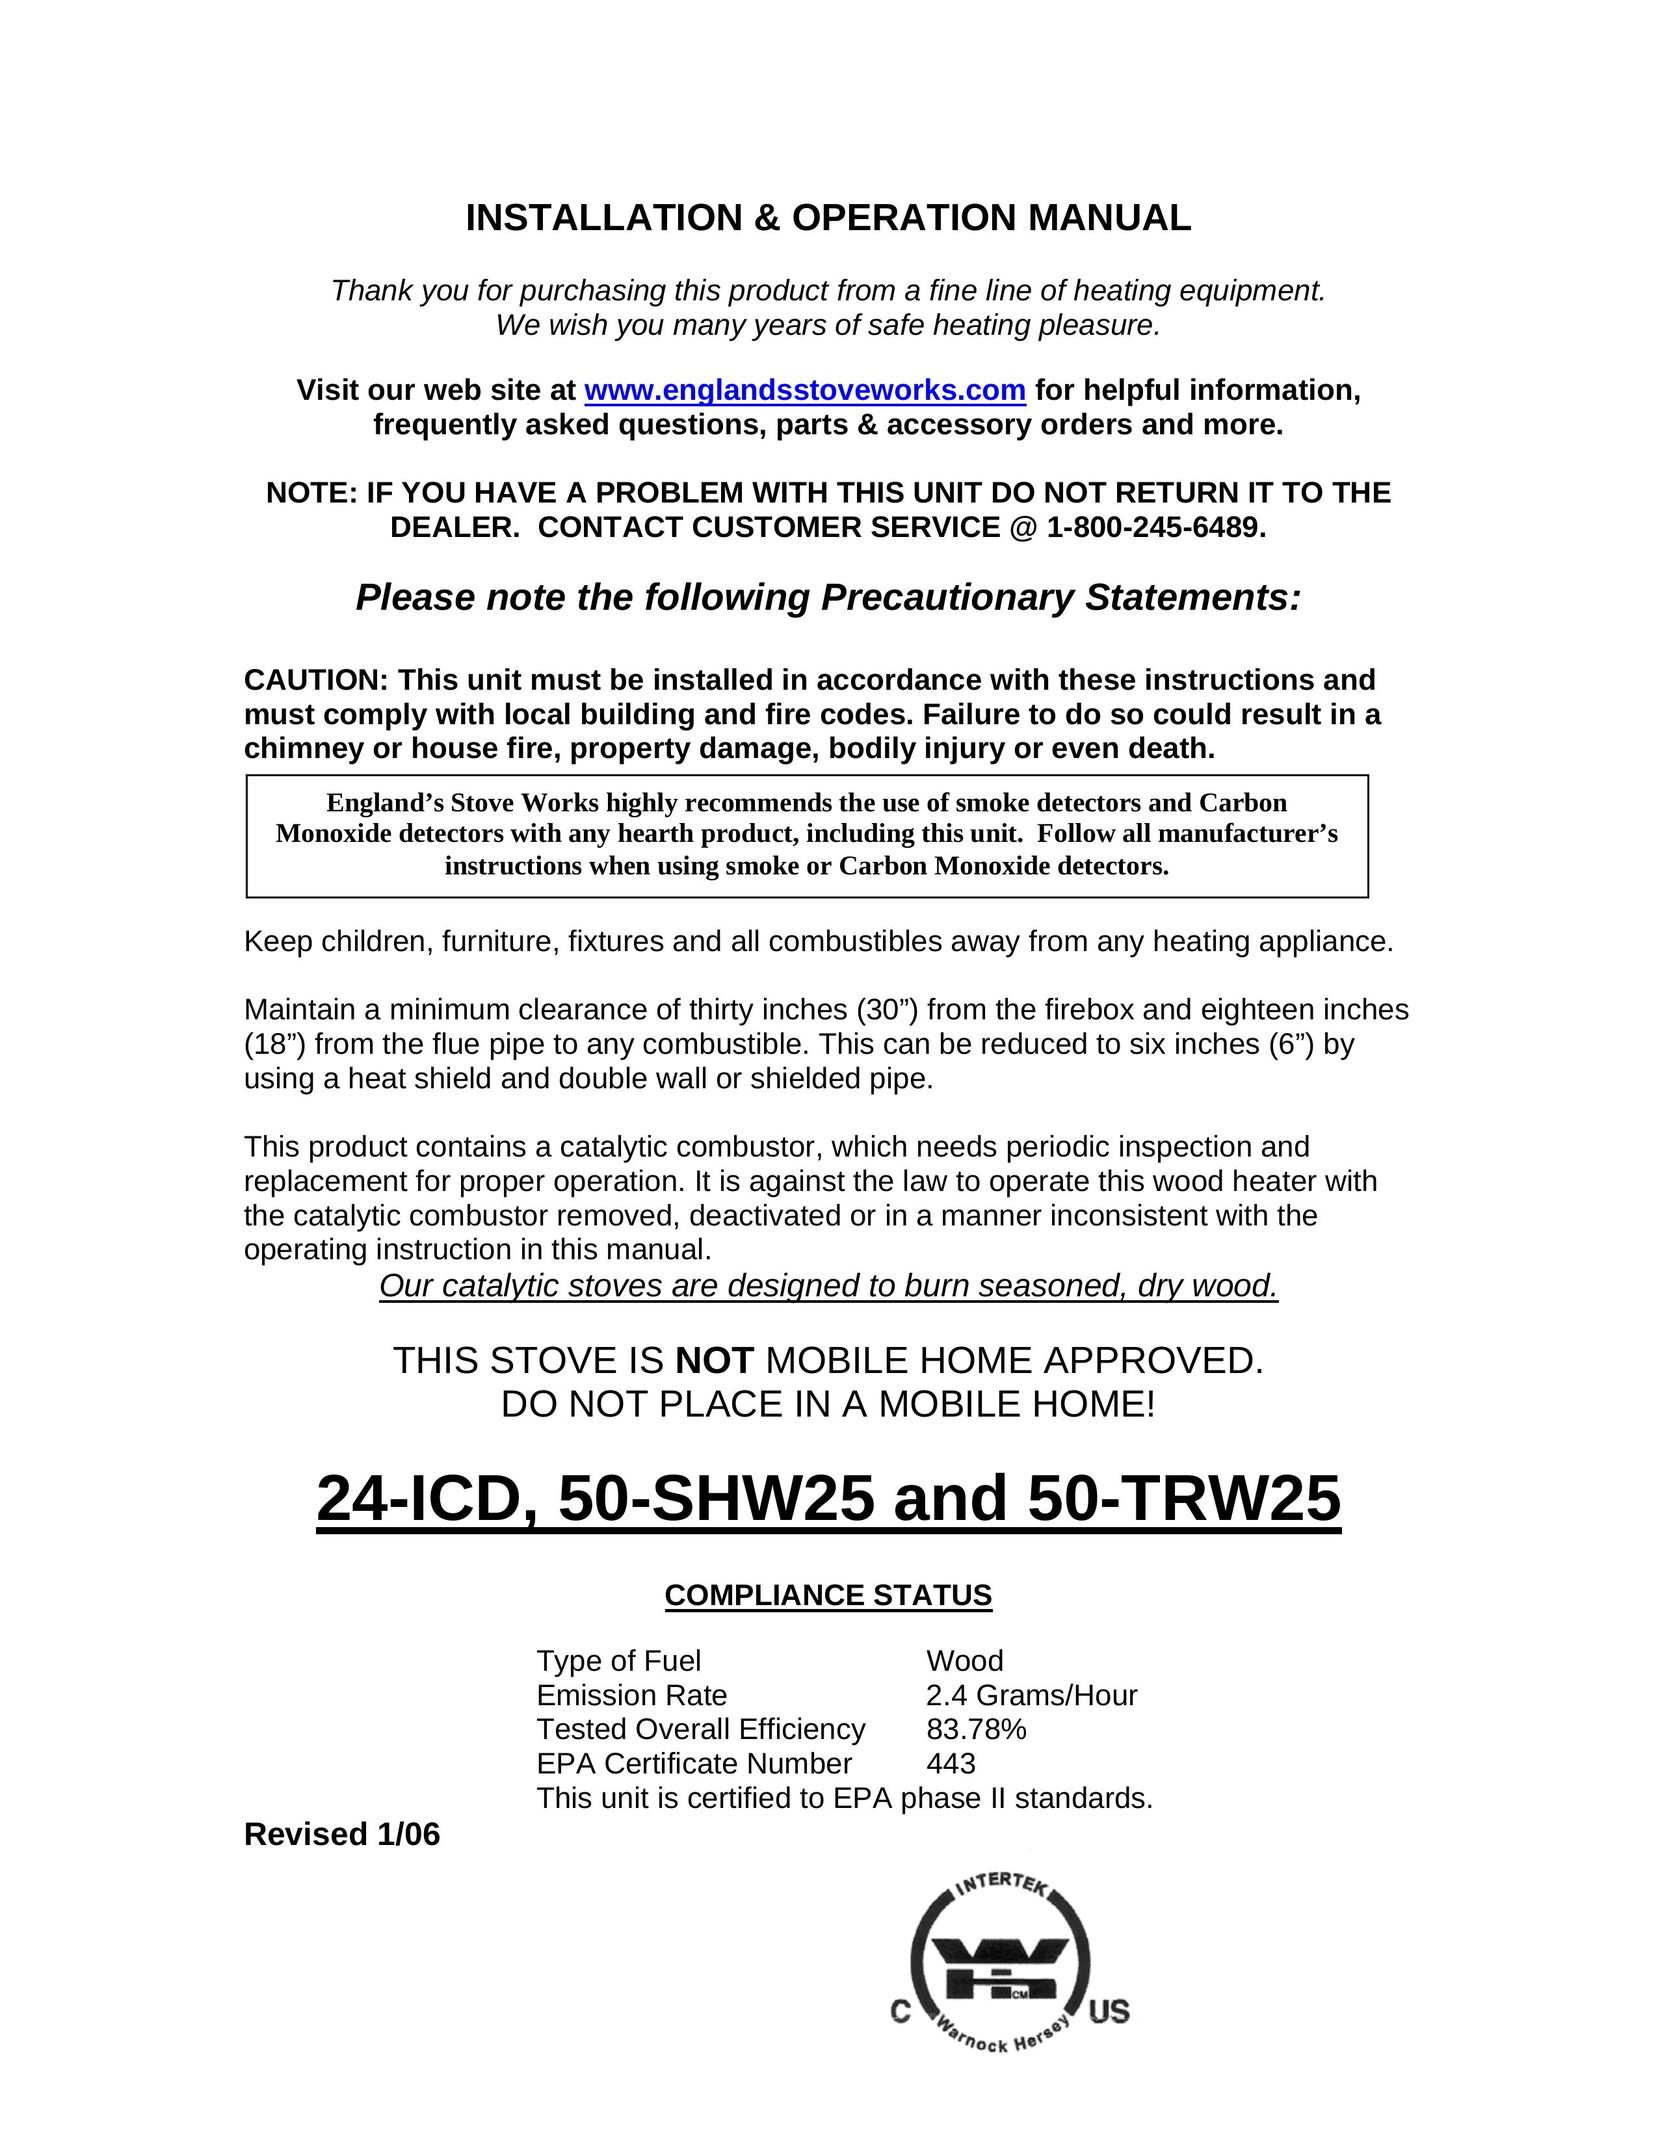 England's Stove Works 24-ICD Stove User Manual